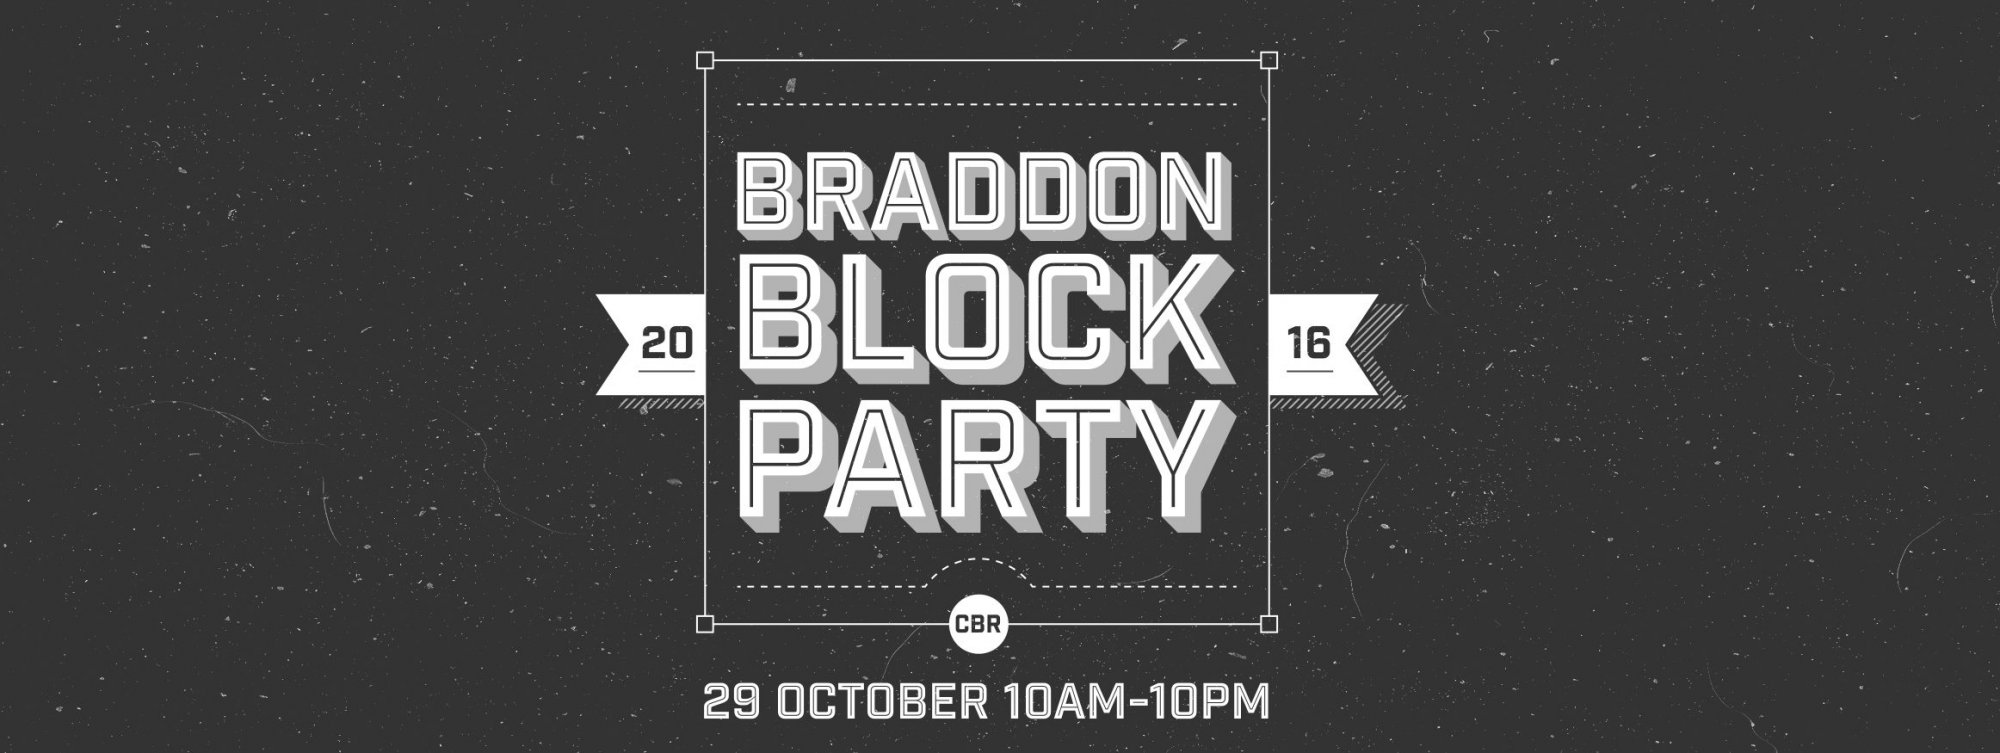 braddon-block-party